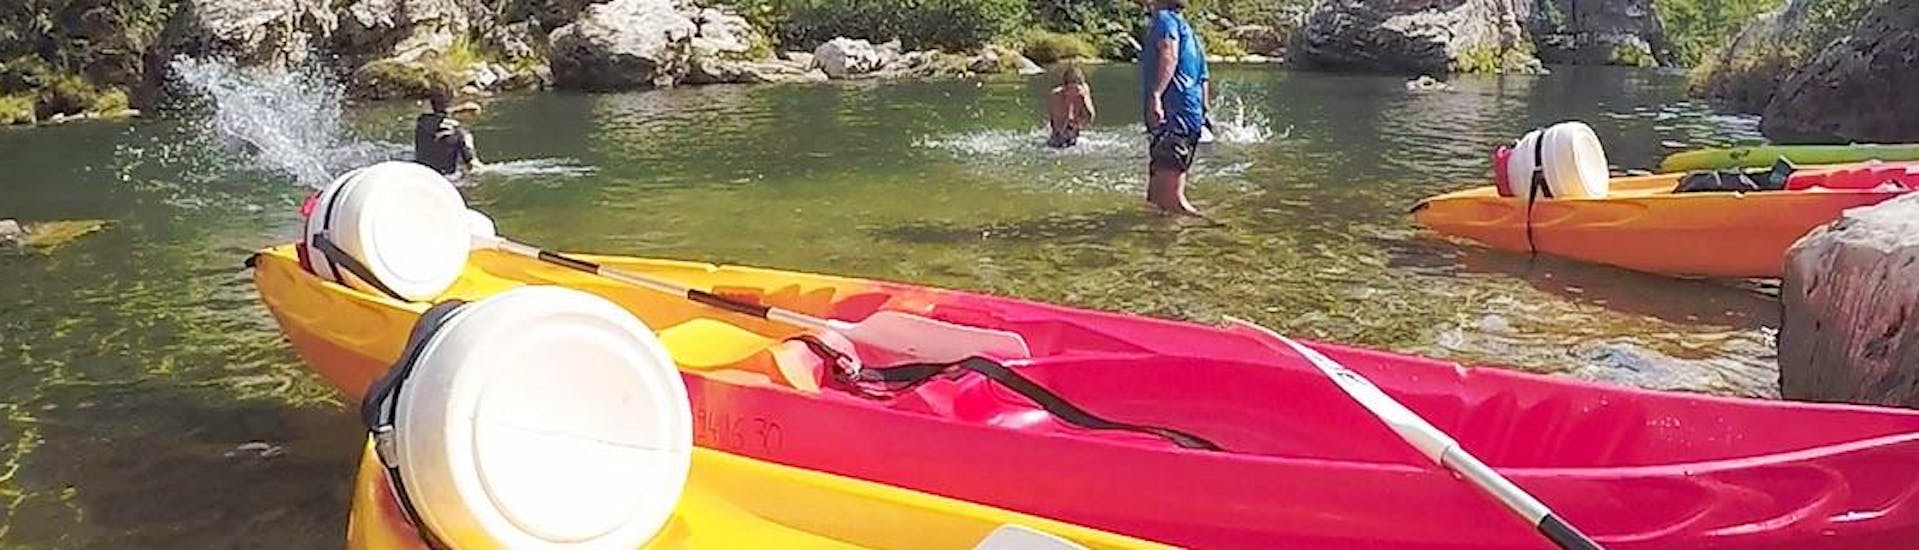 Family hiring a kayak-canoe on the Tarn river with Sun VTT Canoë.